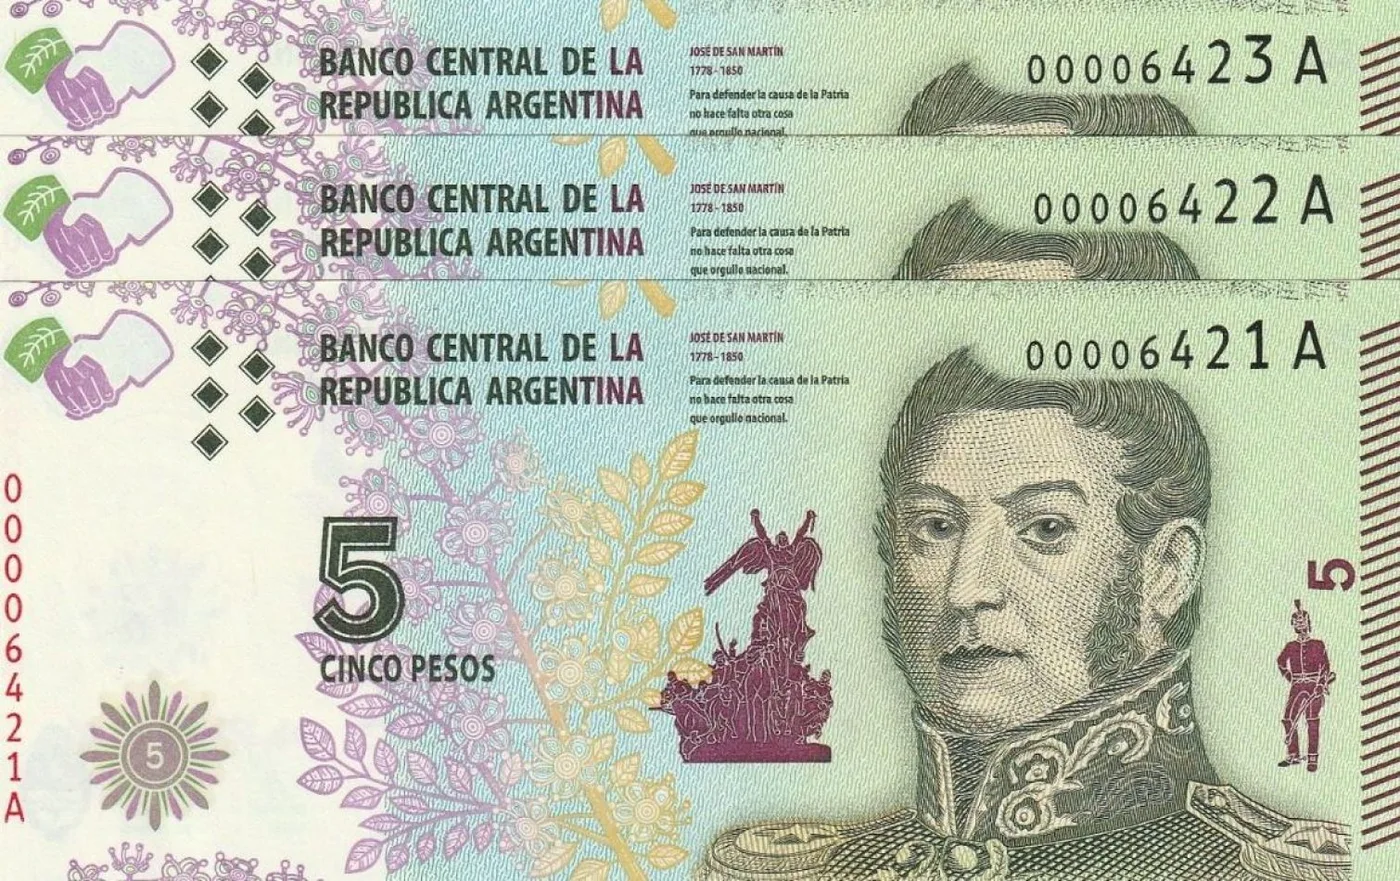 El billete de 5 pesos se jubiló